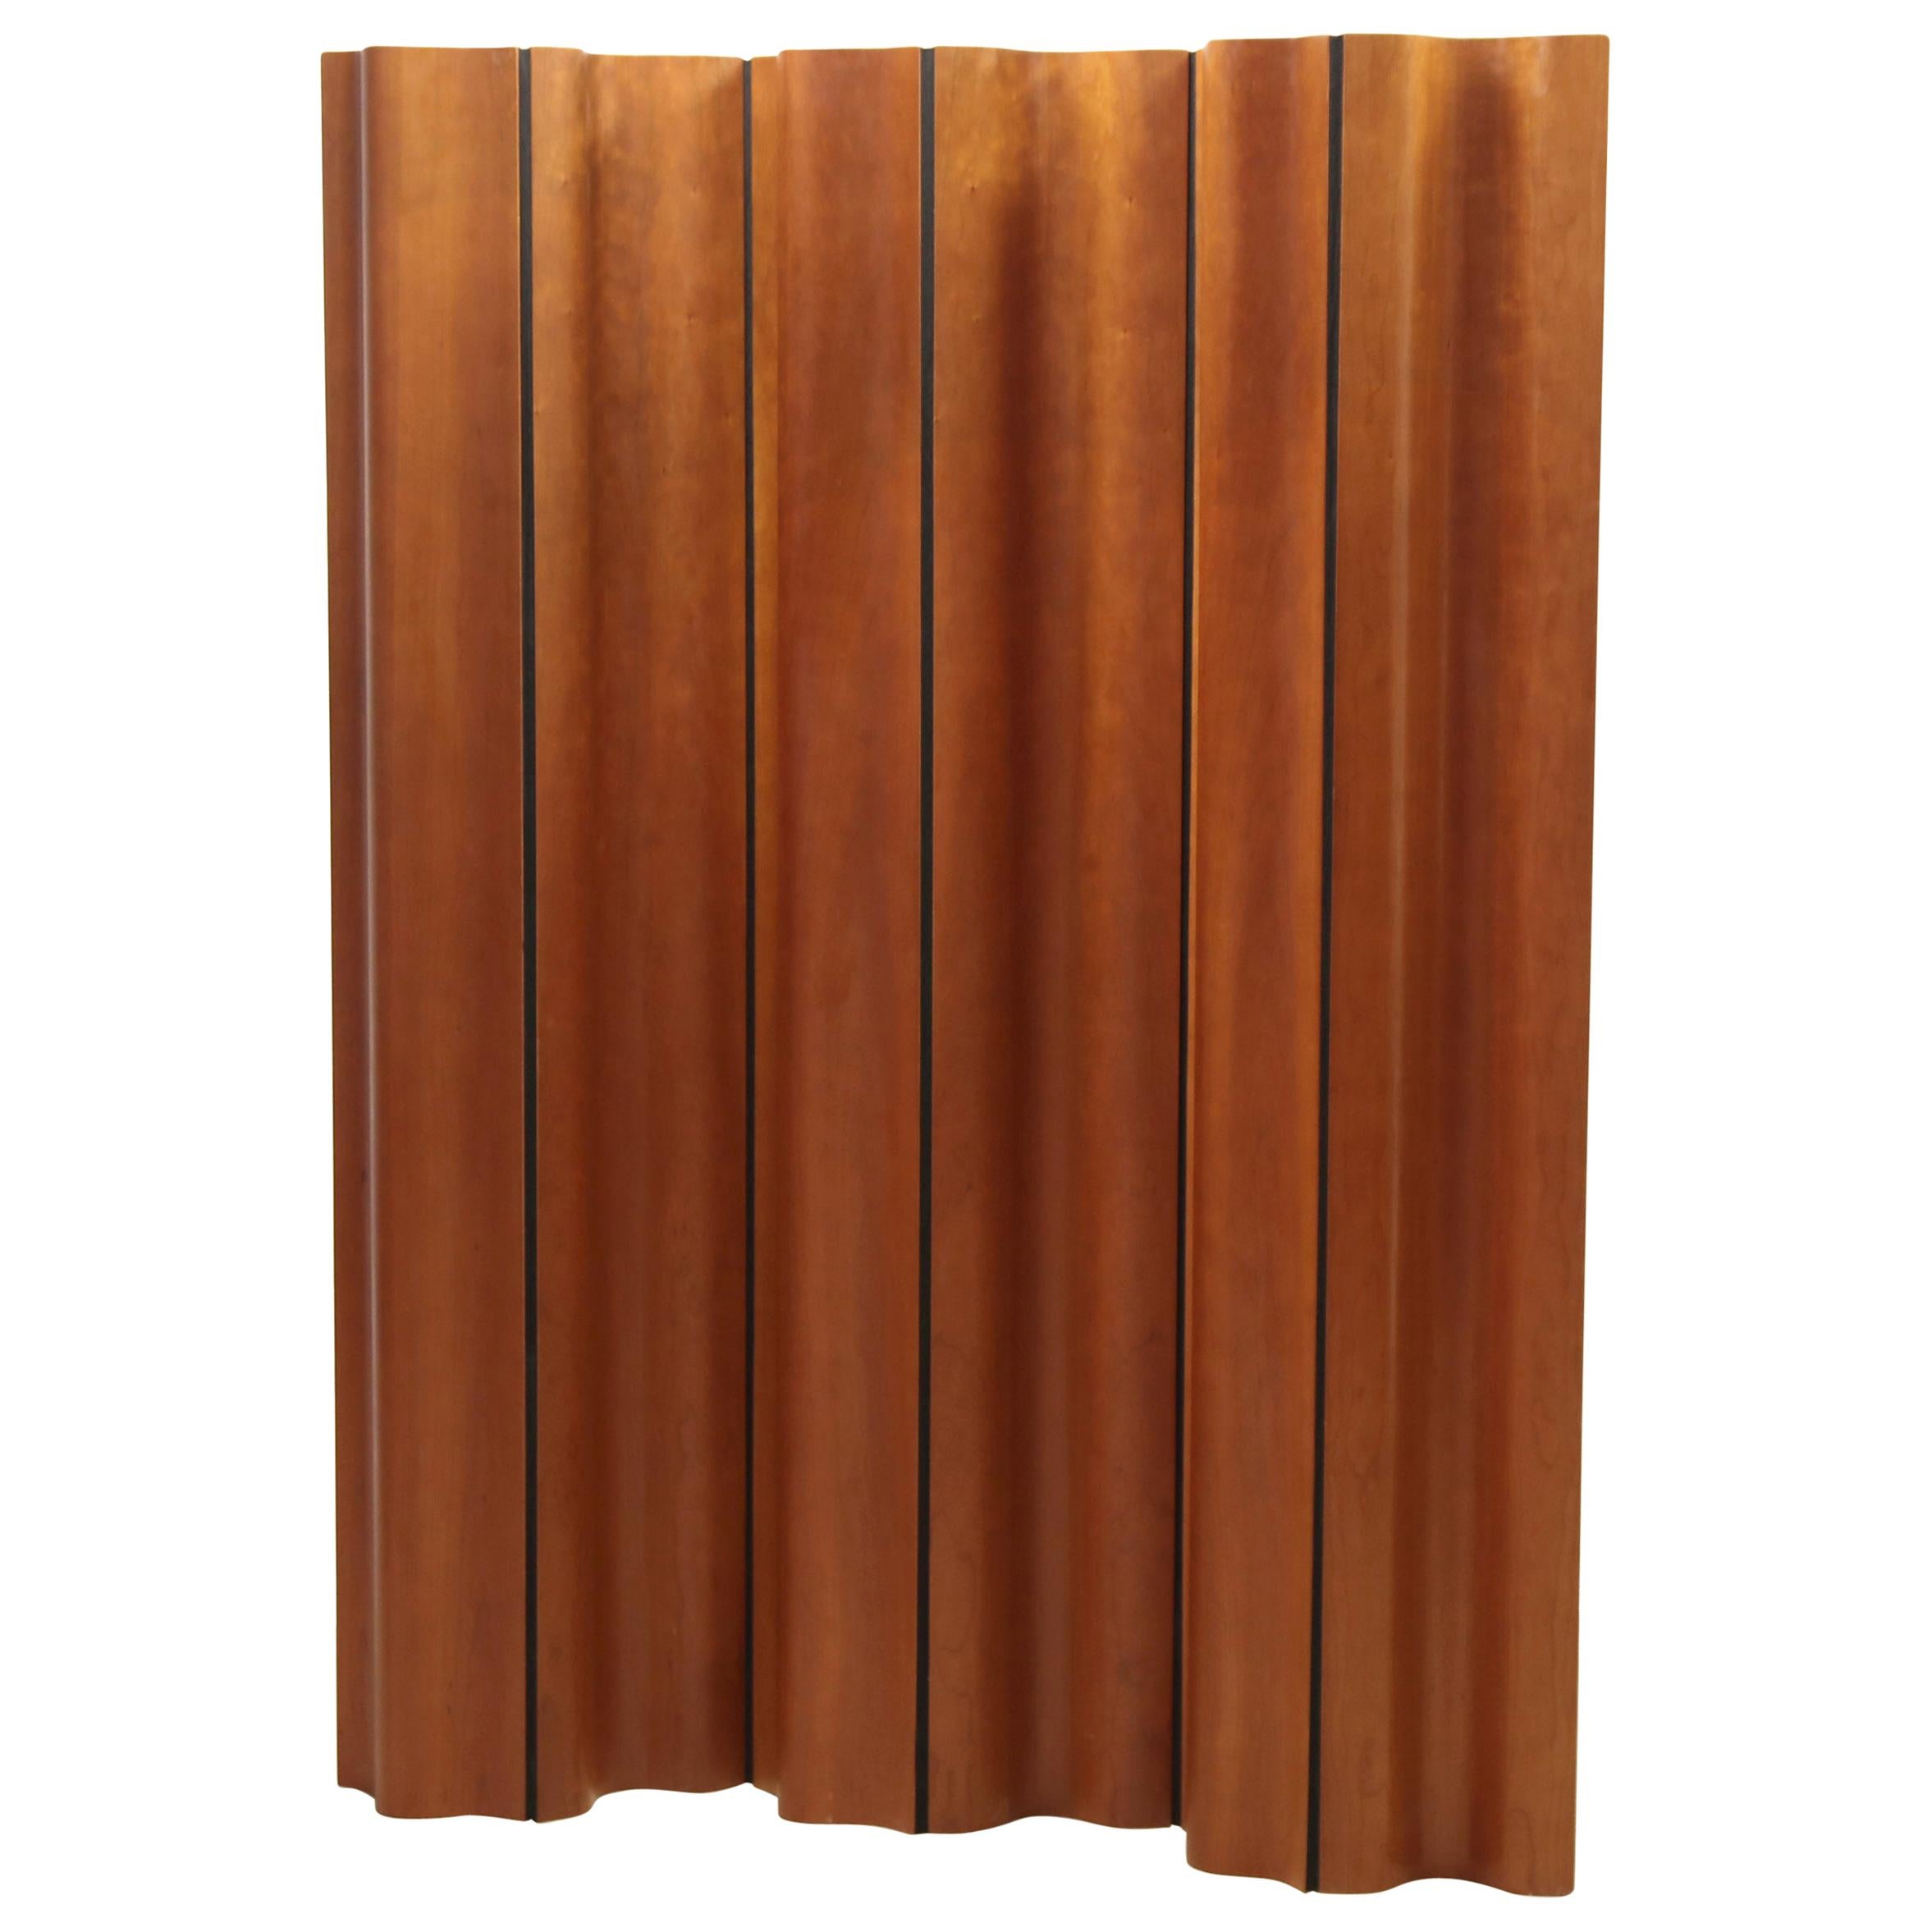 Eames Plywood Folding Room Divider for Herman Miller